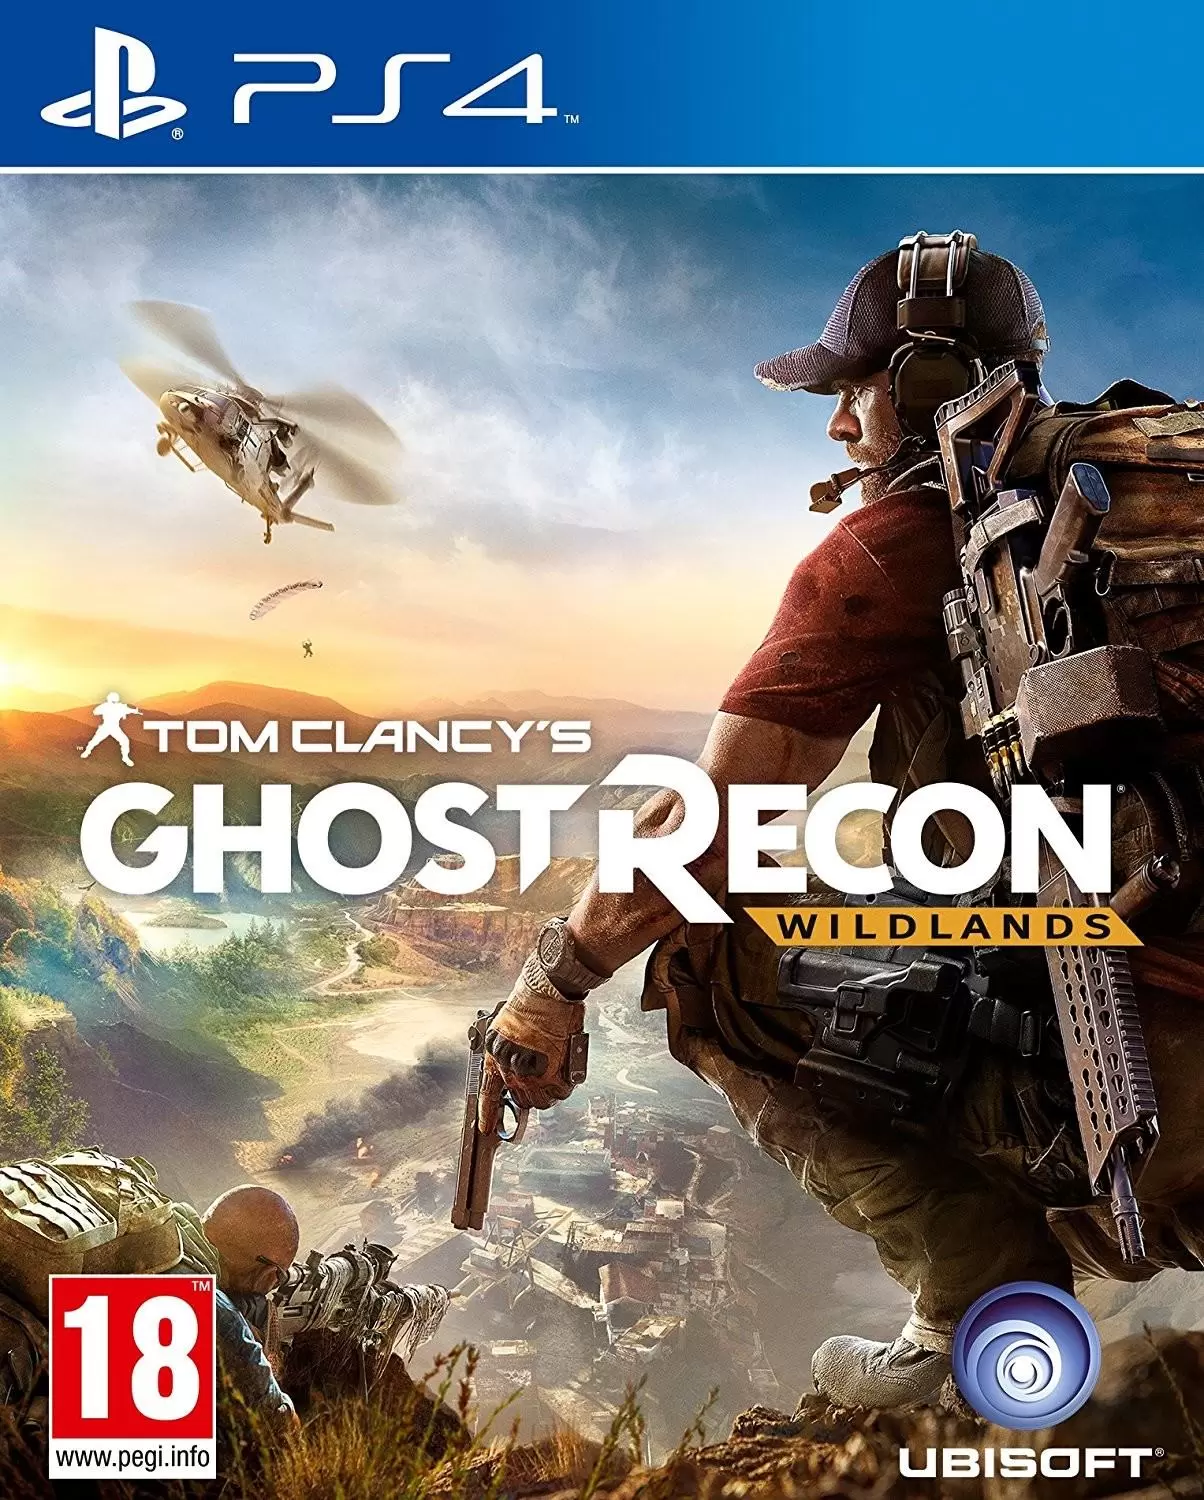 PS4 Games - Ghost Recon : Wildlands